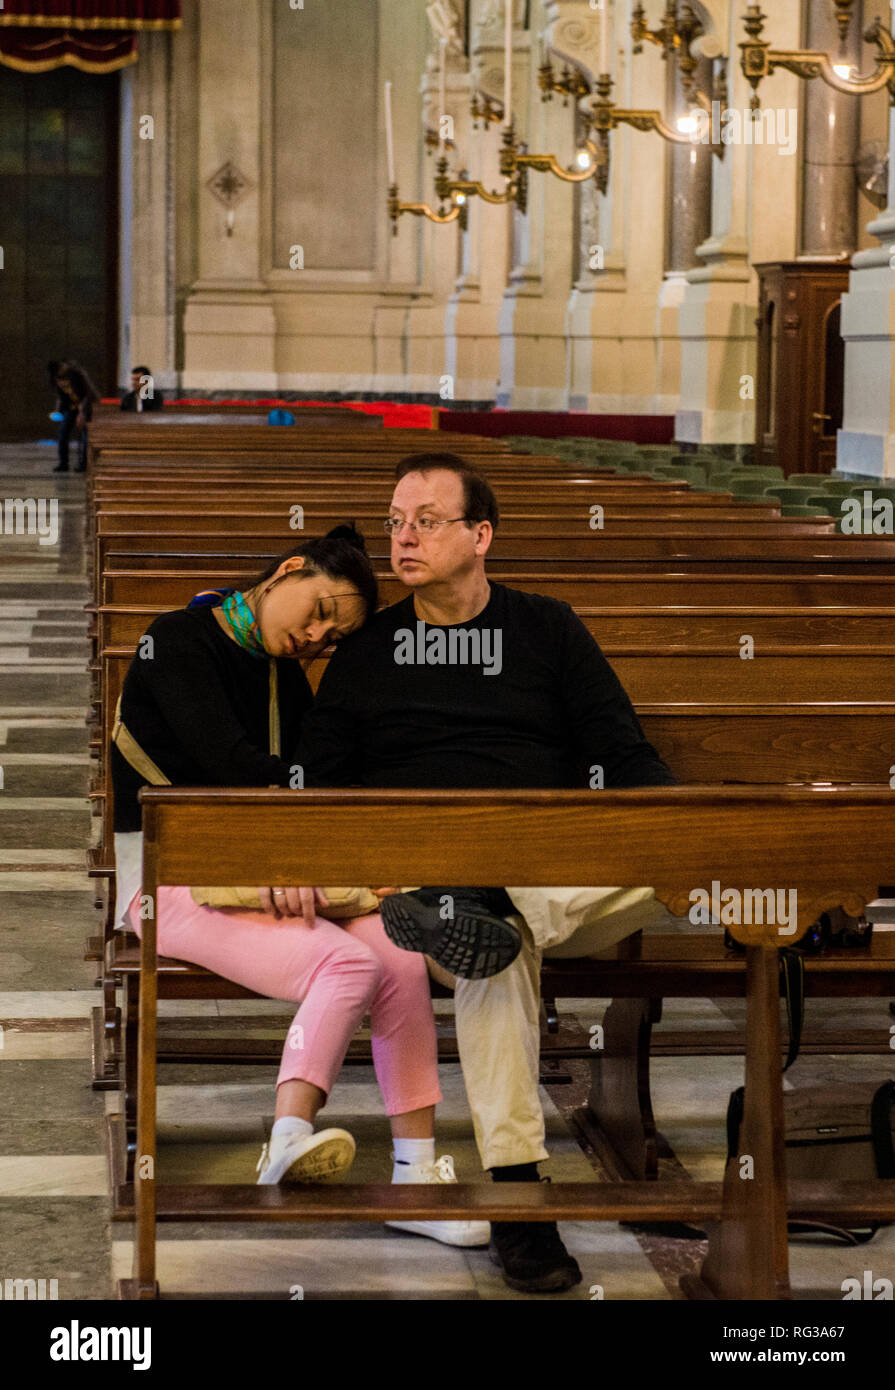 Der Mann und die Frau in der kirchenbänke in der Kathedrale von Palermo, Frau schläft, die Stadt Palermo, Sizilien, Italien, Europa sitzen Stockfoto